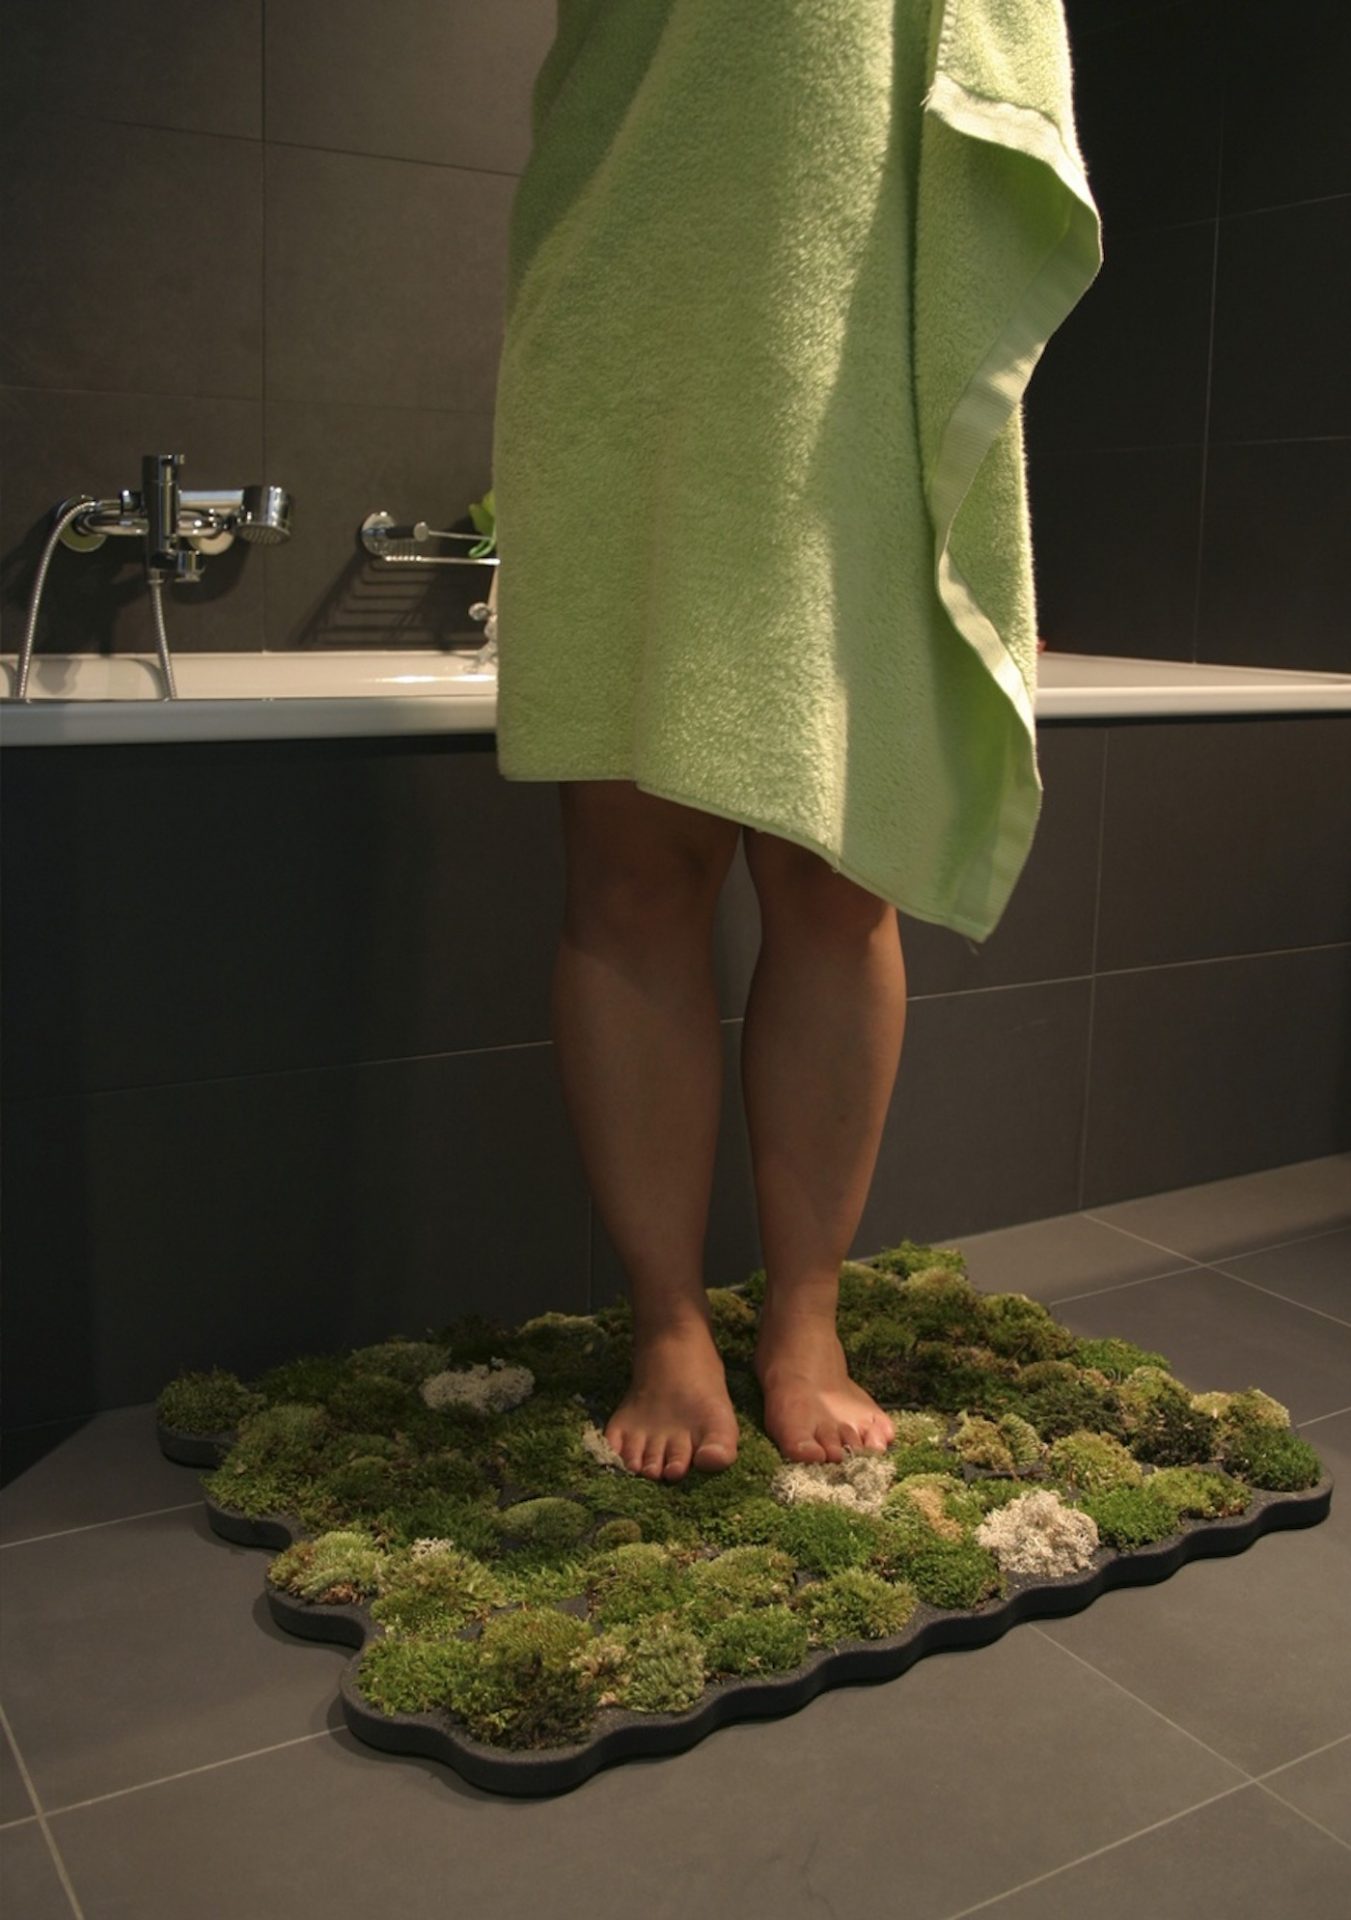 Ce tapis de bain organique profite des gouttes d'eau pour faire pousser de la mousse